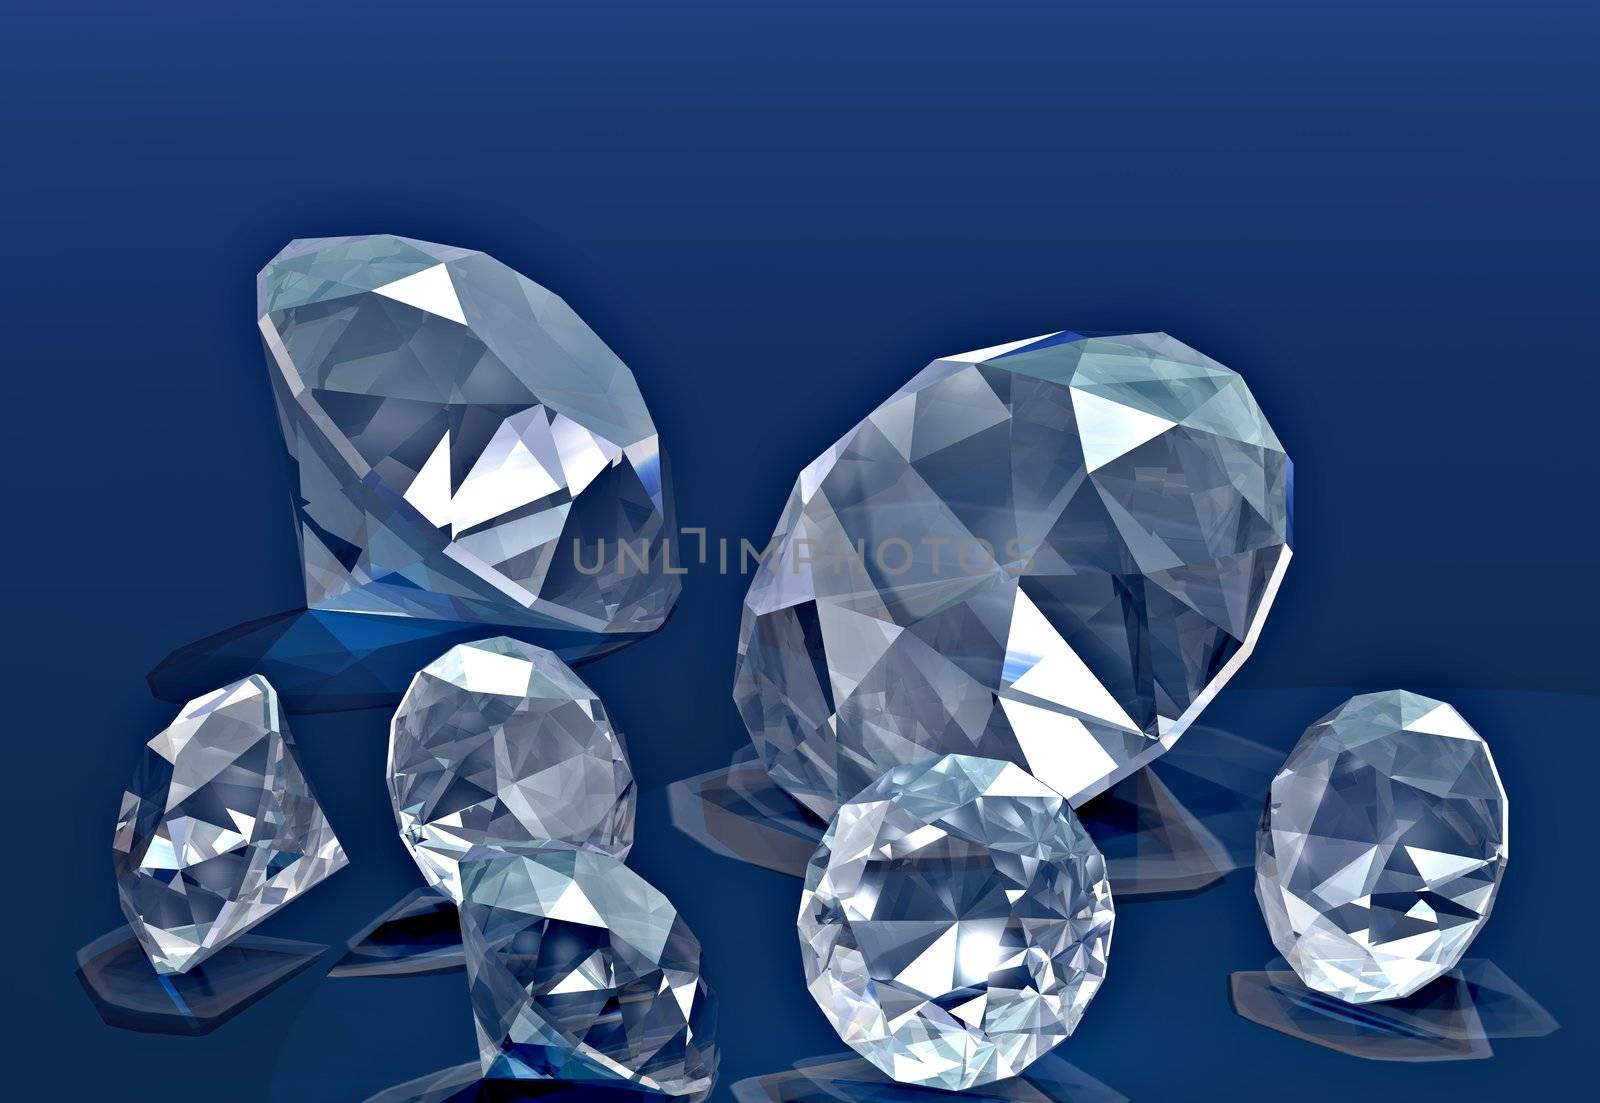 A handful of diamonds thrown onto blue velvet